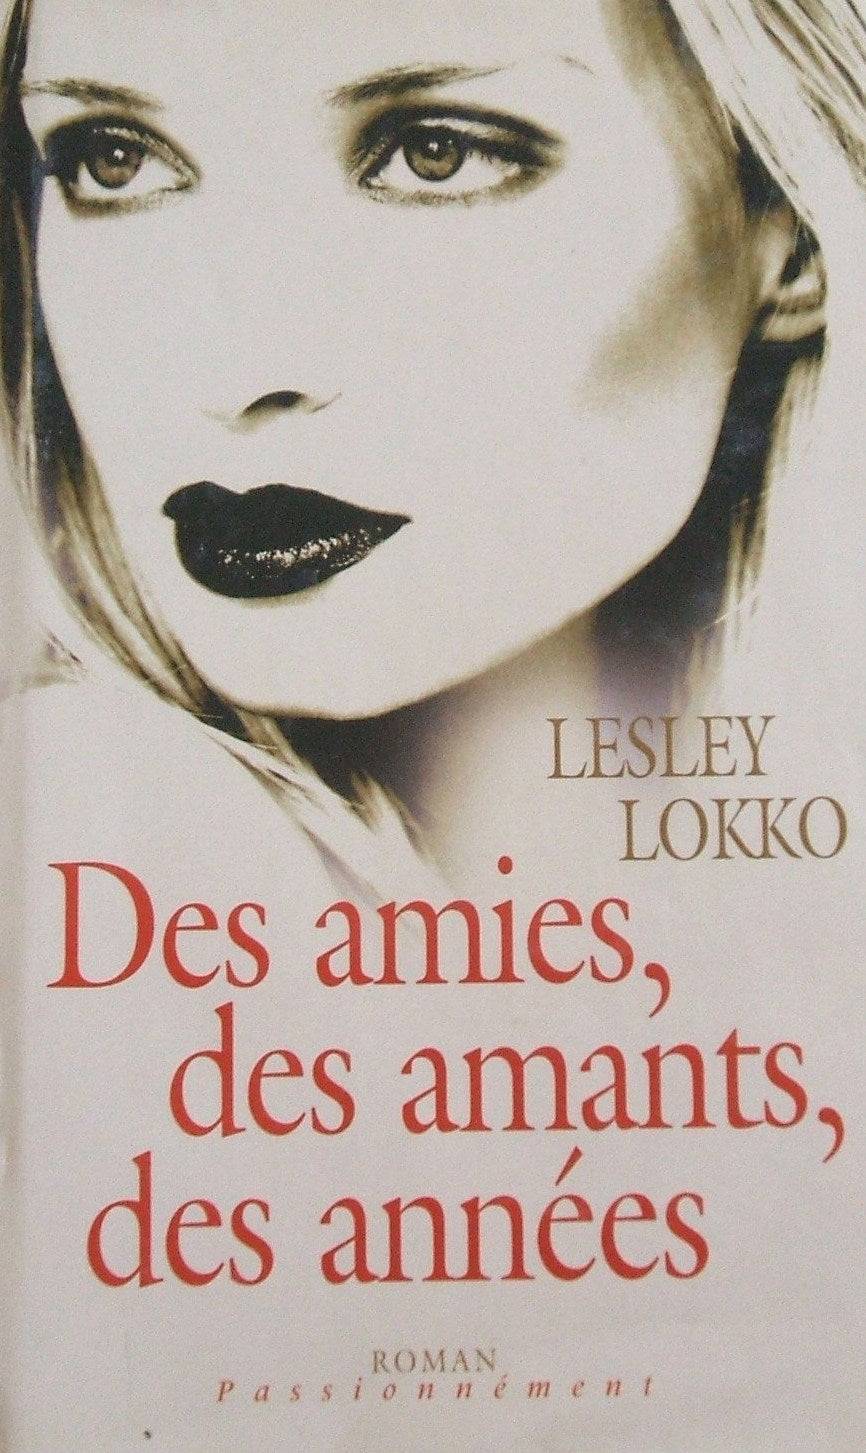 Roman Passionnément : Des amies, des amants, des années - Lesley Lokko